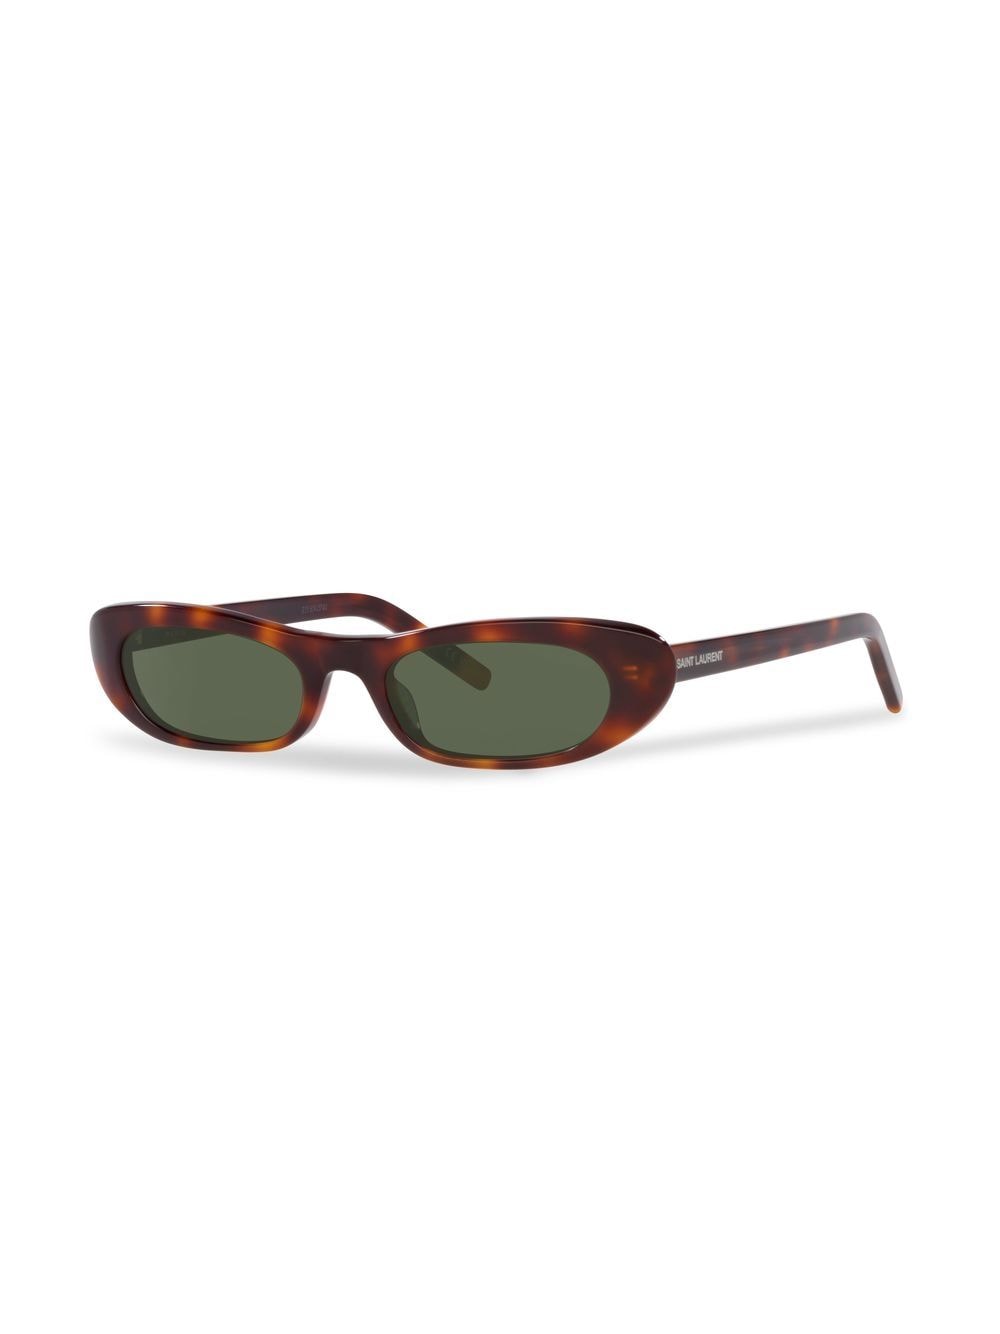 Saint Laurent Eyewear SL 557 zonnebril met schildpadschild design - Bruin